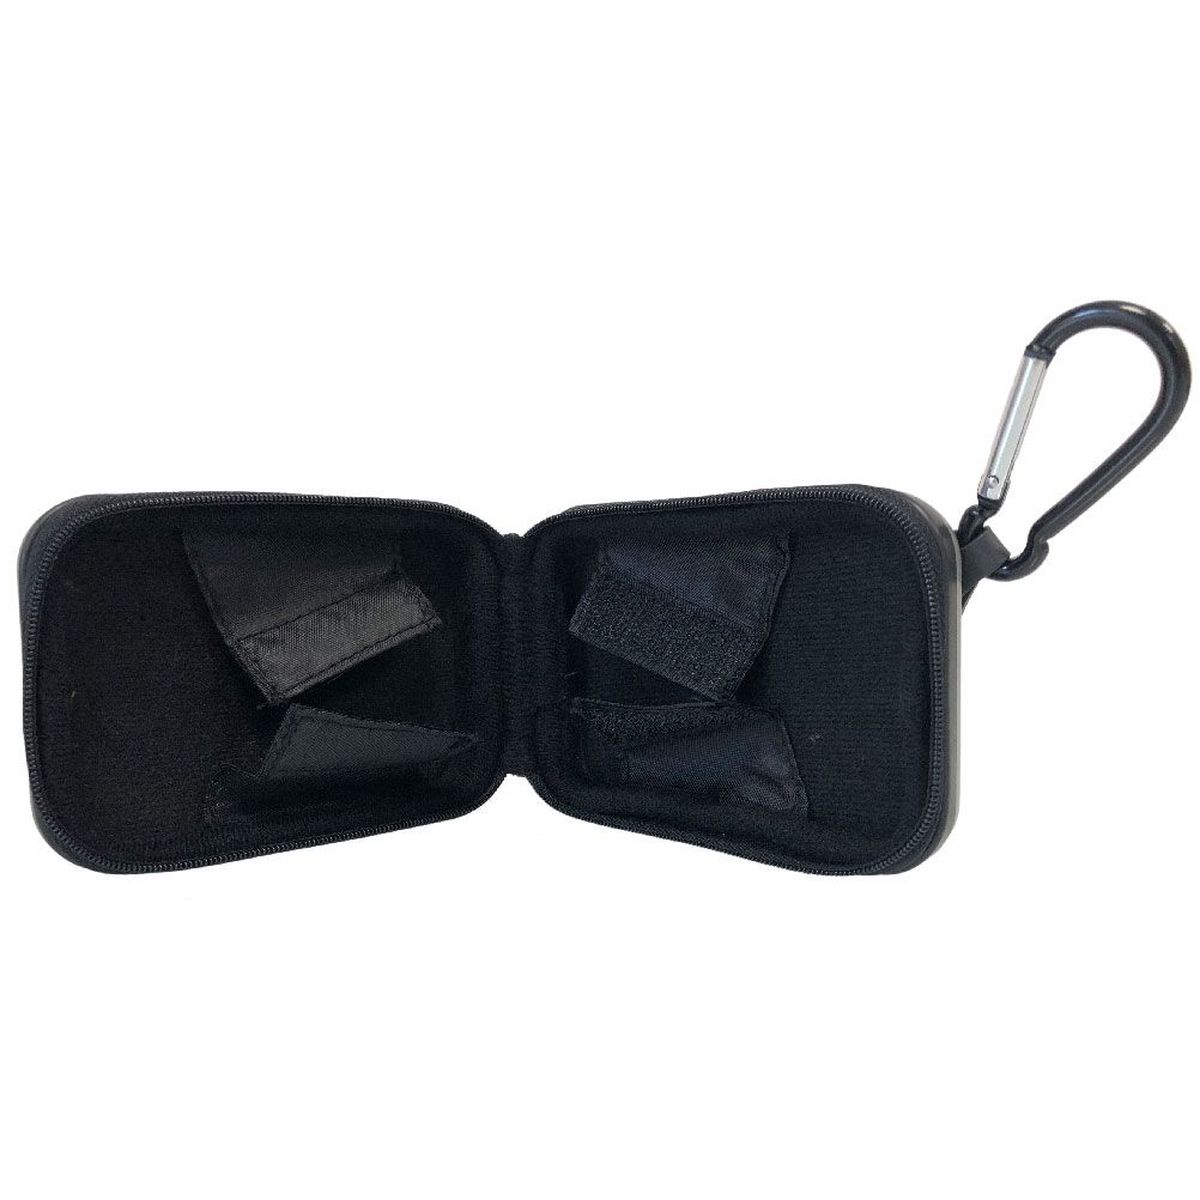 Gray metal Zippo cigarette case - carabiner clip